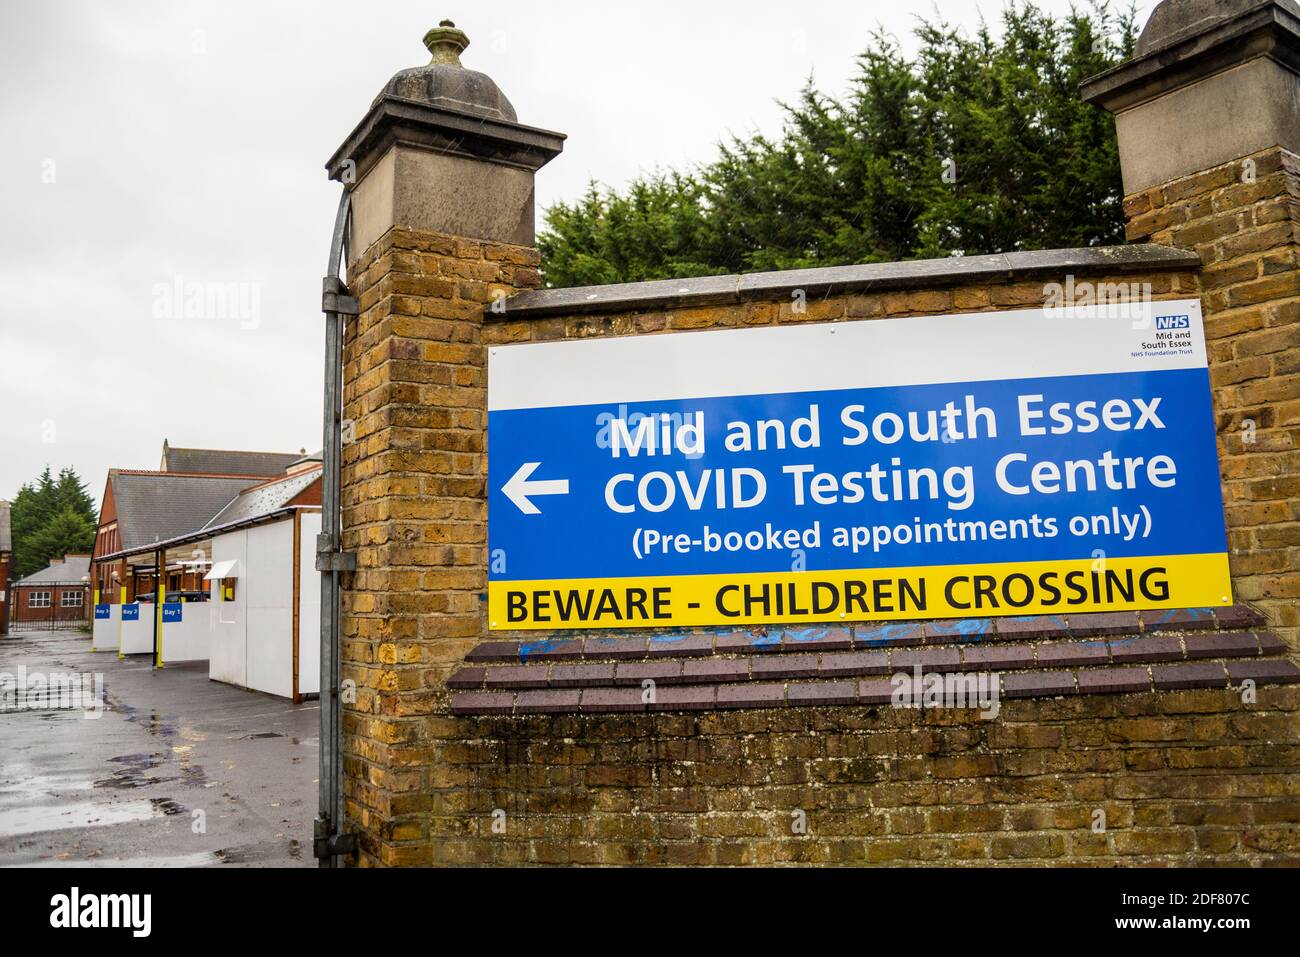 Covid 19 Testzentrum. Mid and South Essex NHS Covid Testing Center in Southend on Sea, Essex, Großbritannien. Nur vorgebuchte Termine, unterschreiben. Gemeinschaft Stockfoto